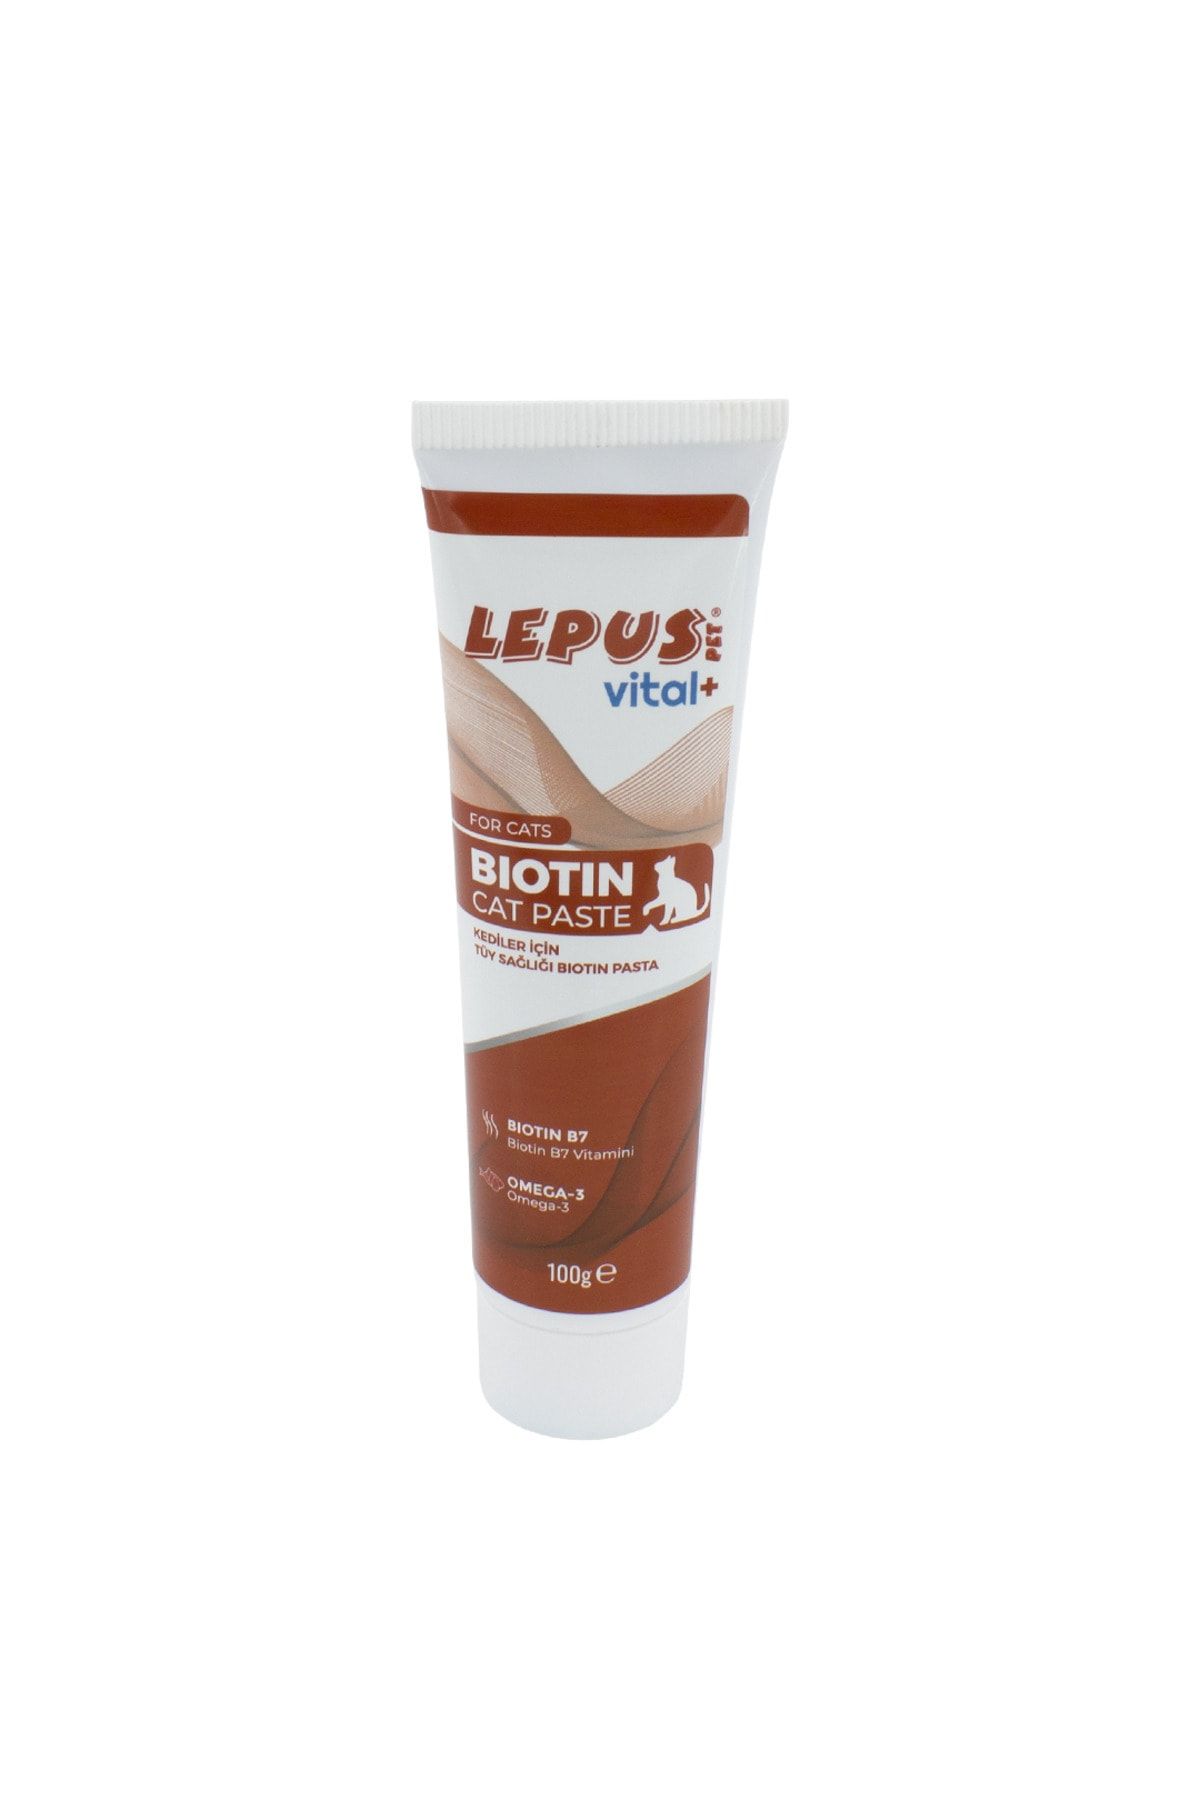 Lepus Vital+ Biotin Paste Cat 100gr